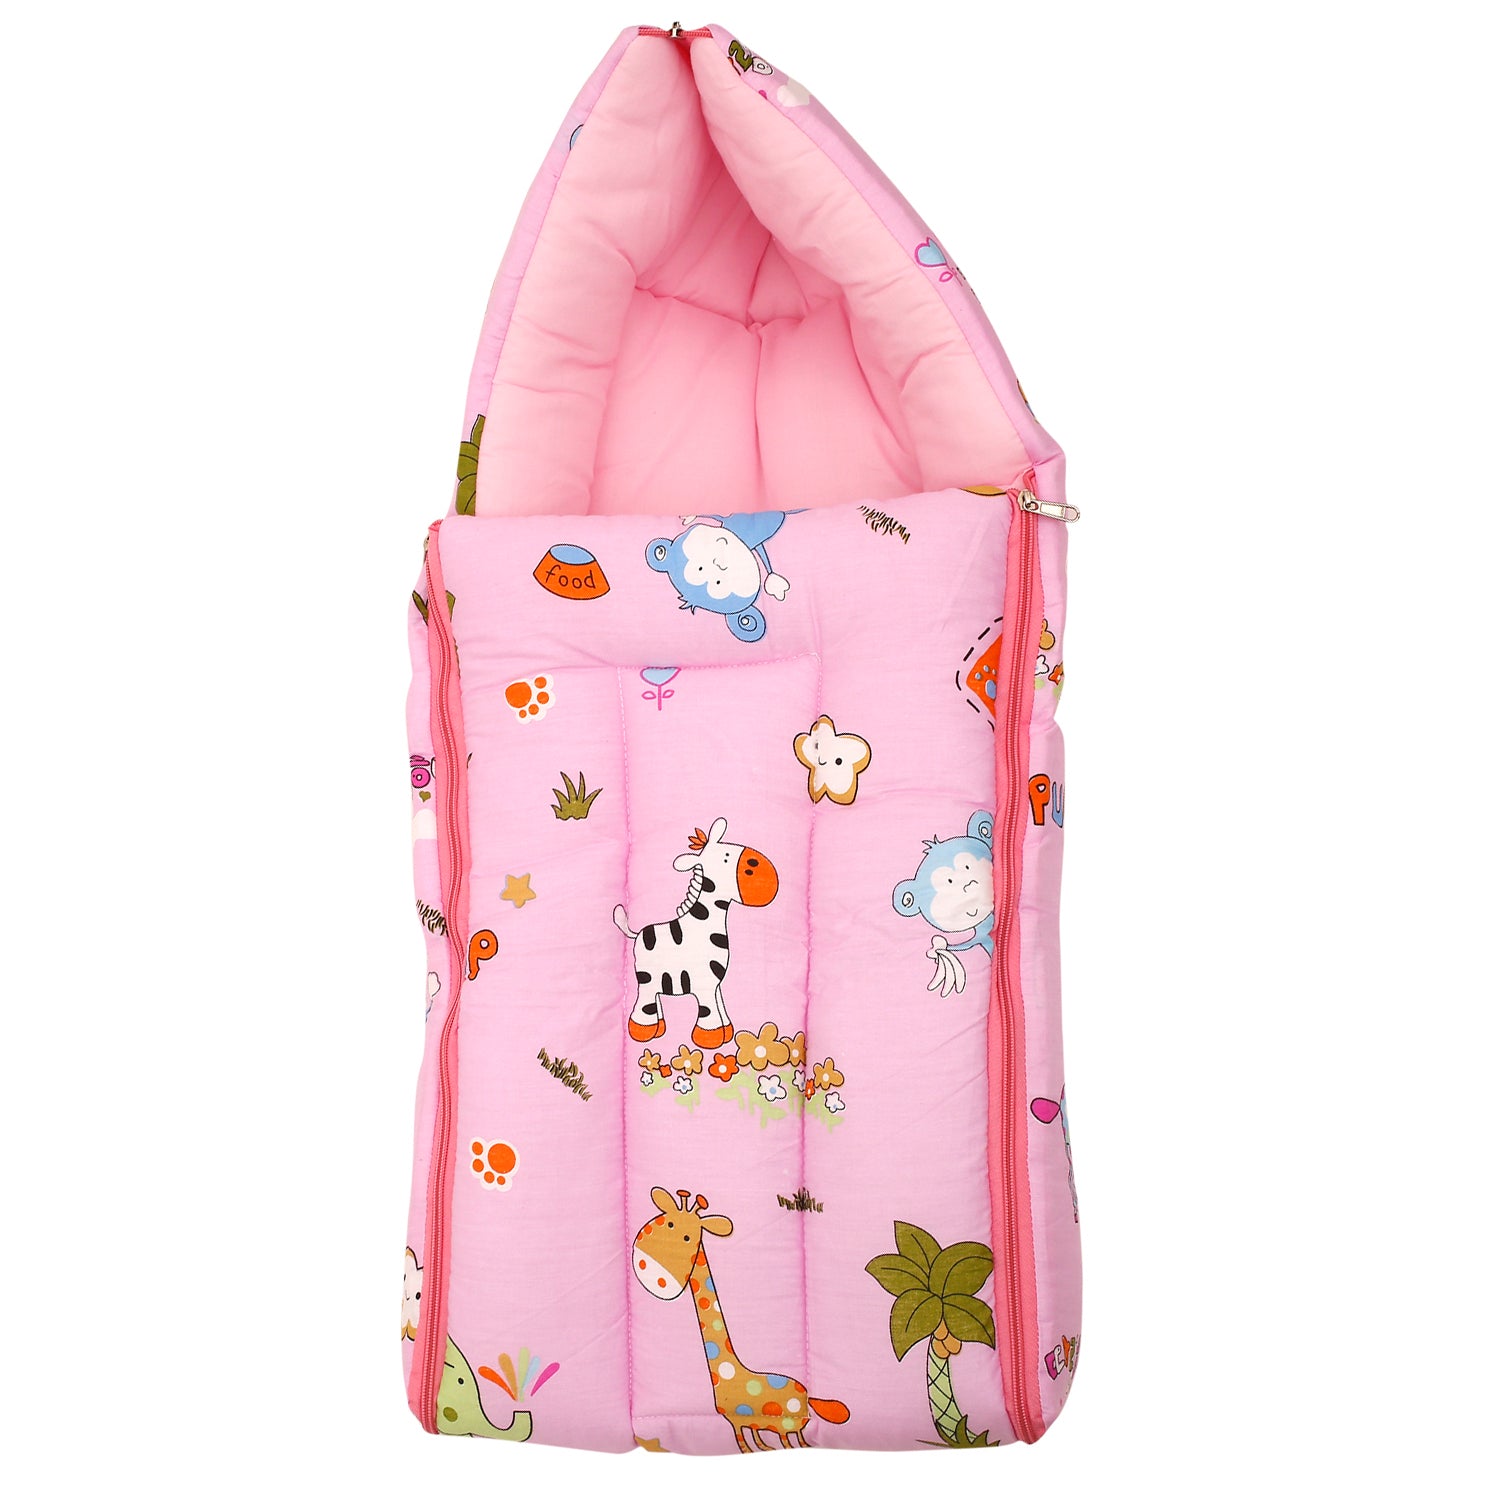 Baby Moo Sleeping Bag Savanna Ooh Na Na Pink